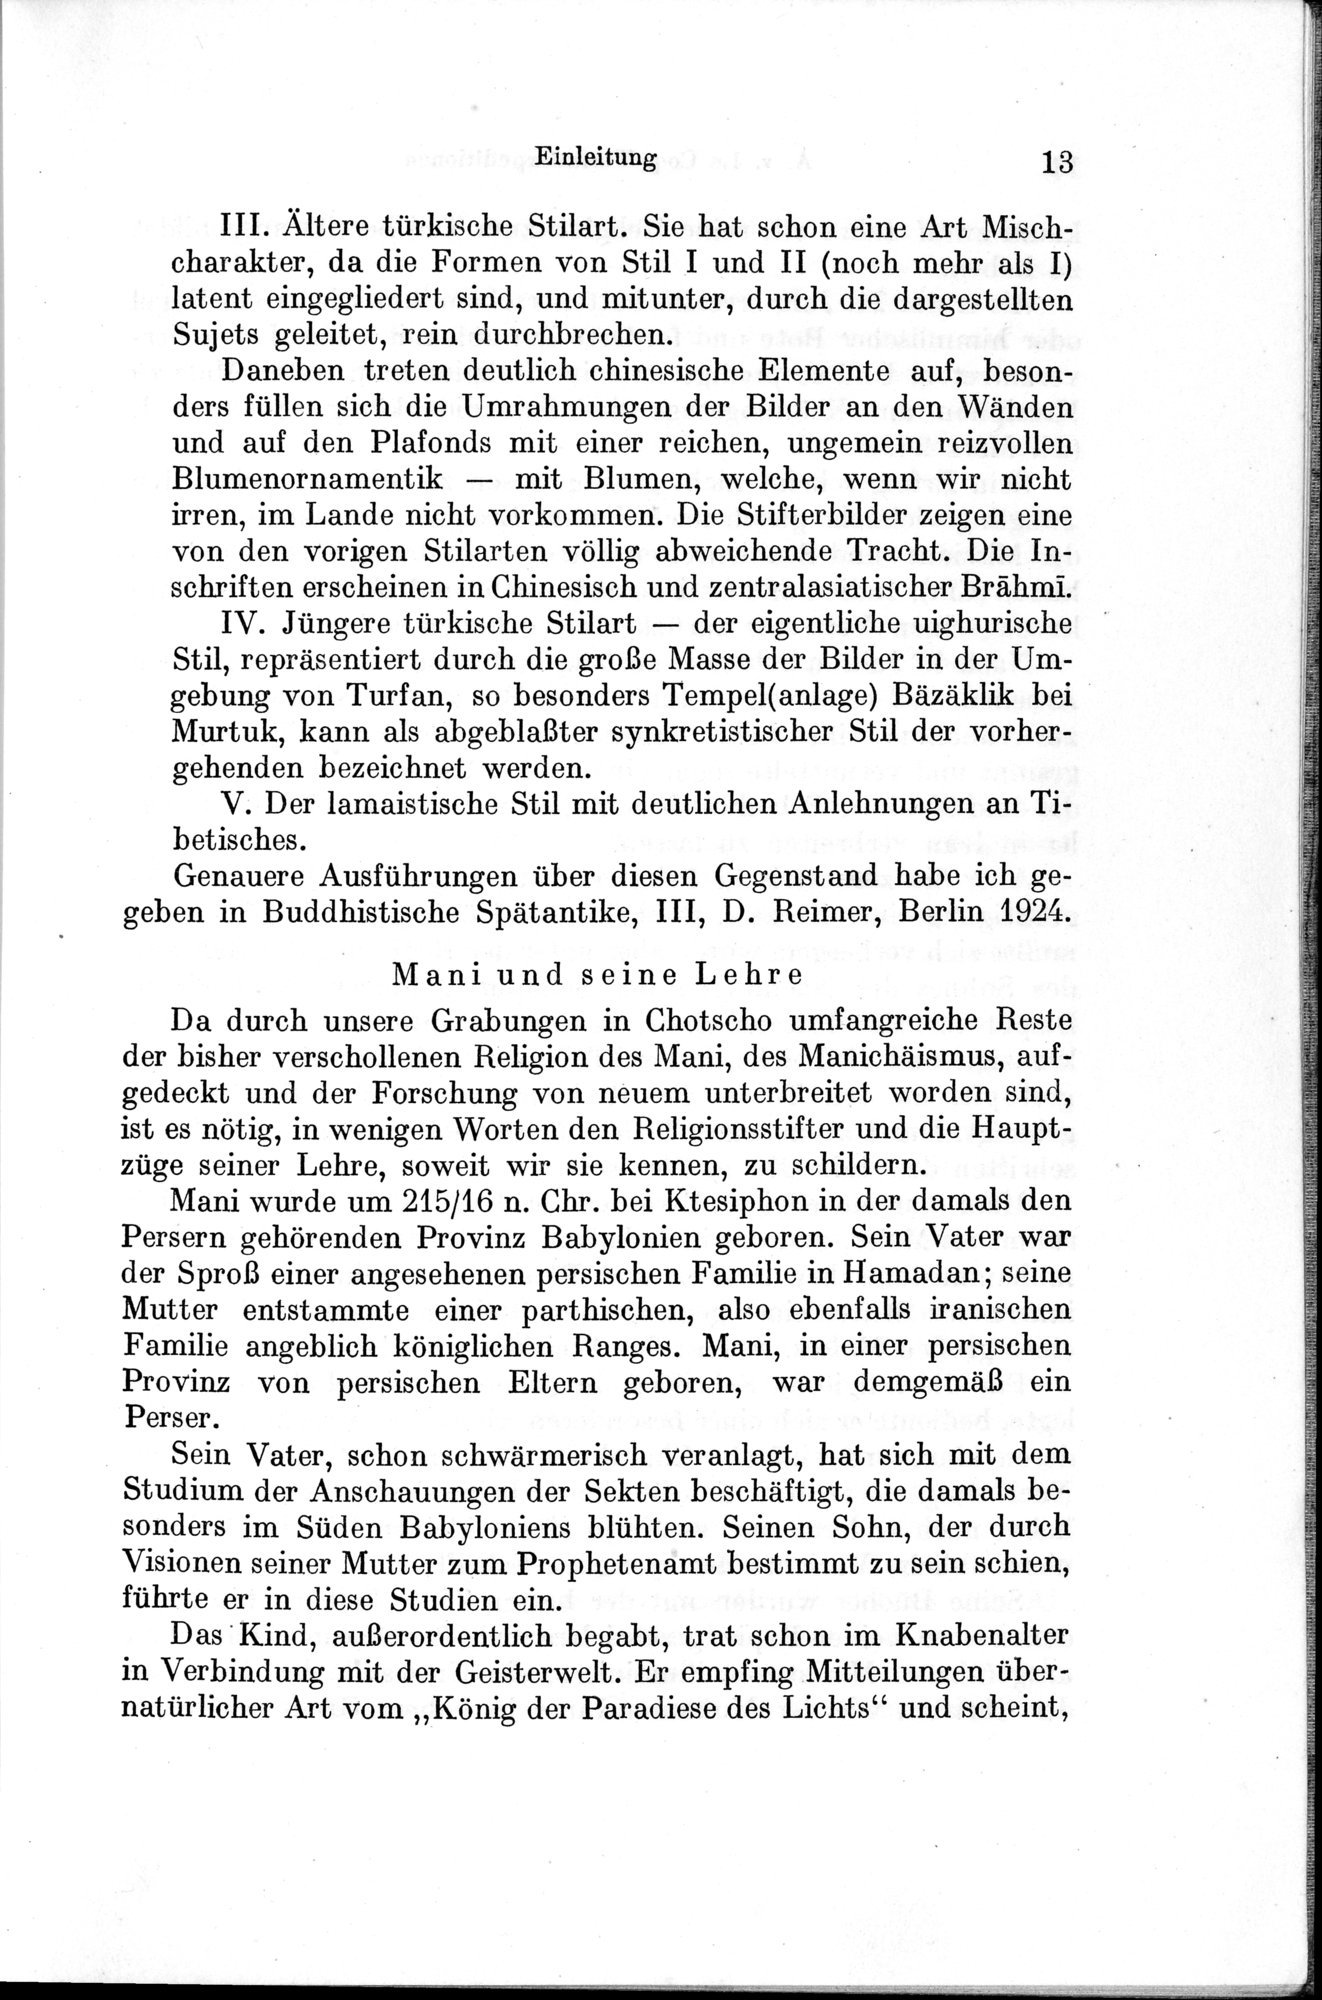 Auf Hellas Spuren in Ostturkistan : vol.1 / Page 29 (Grayscale High Resolution Image)